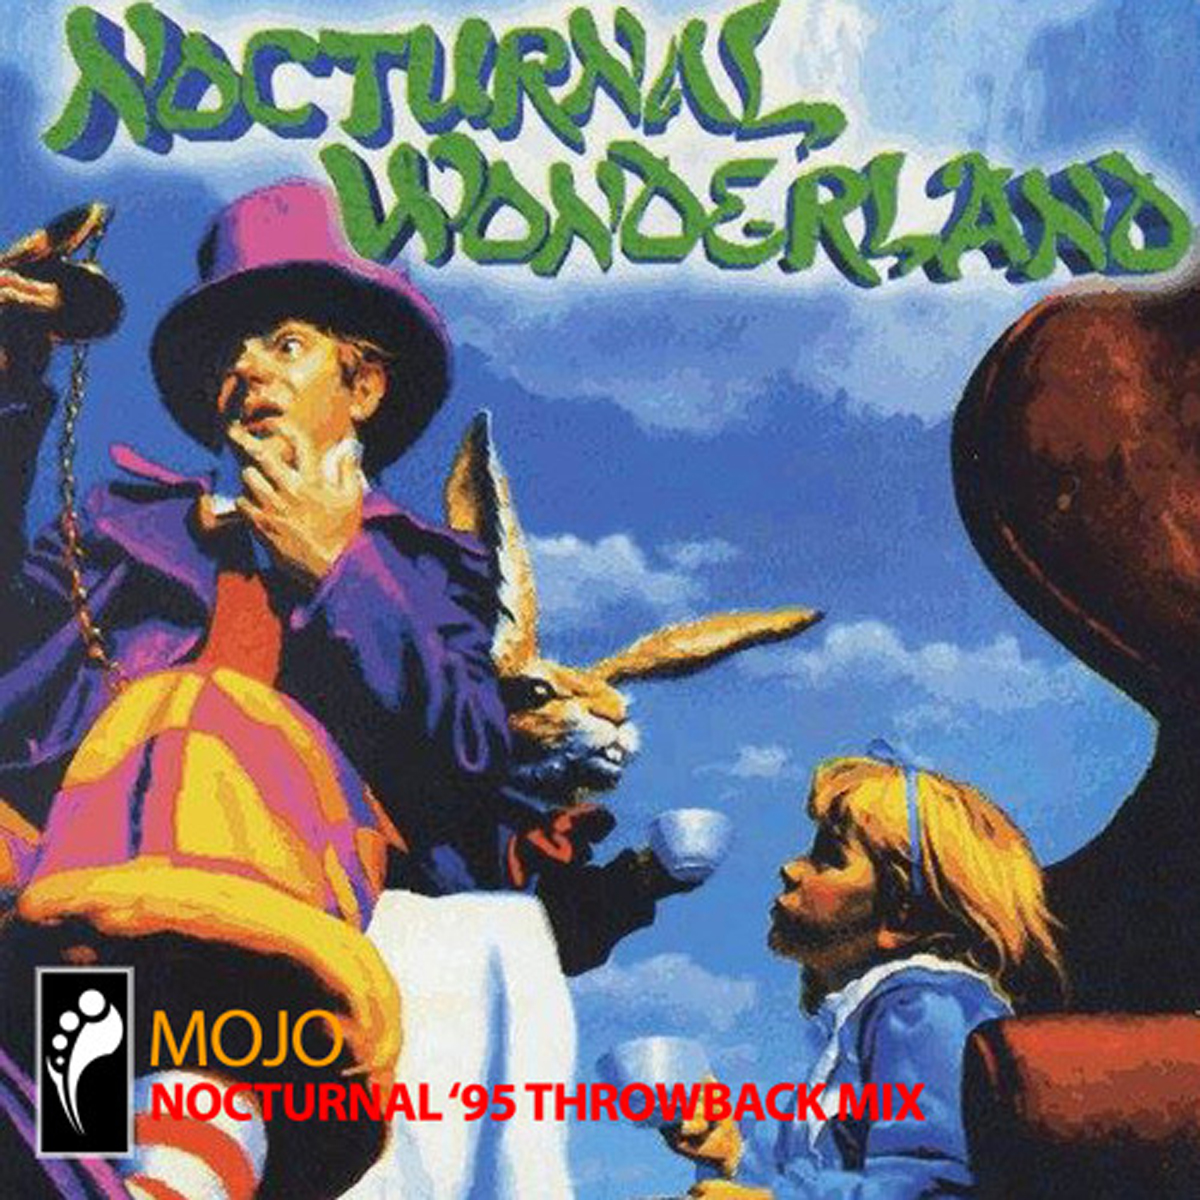 nocturnal wonderland tickets 2015